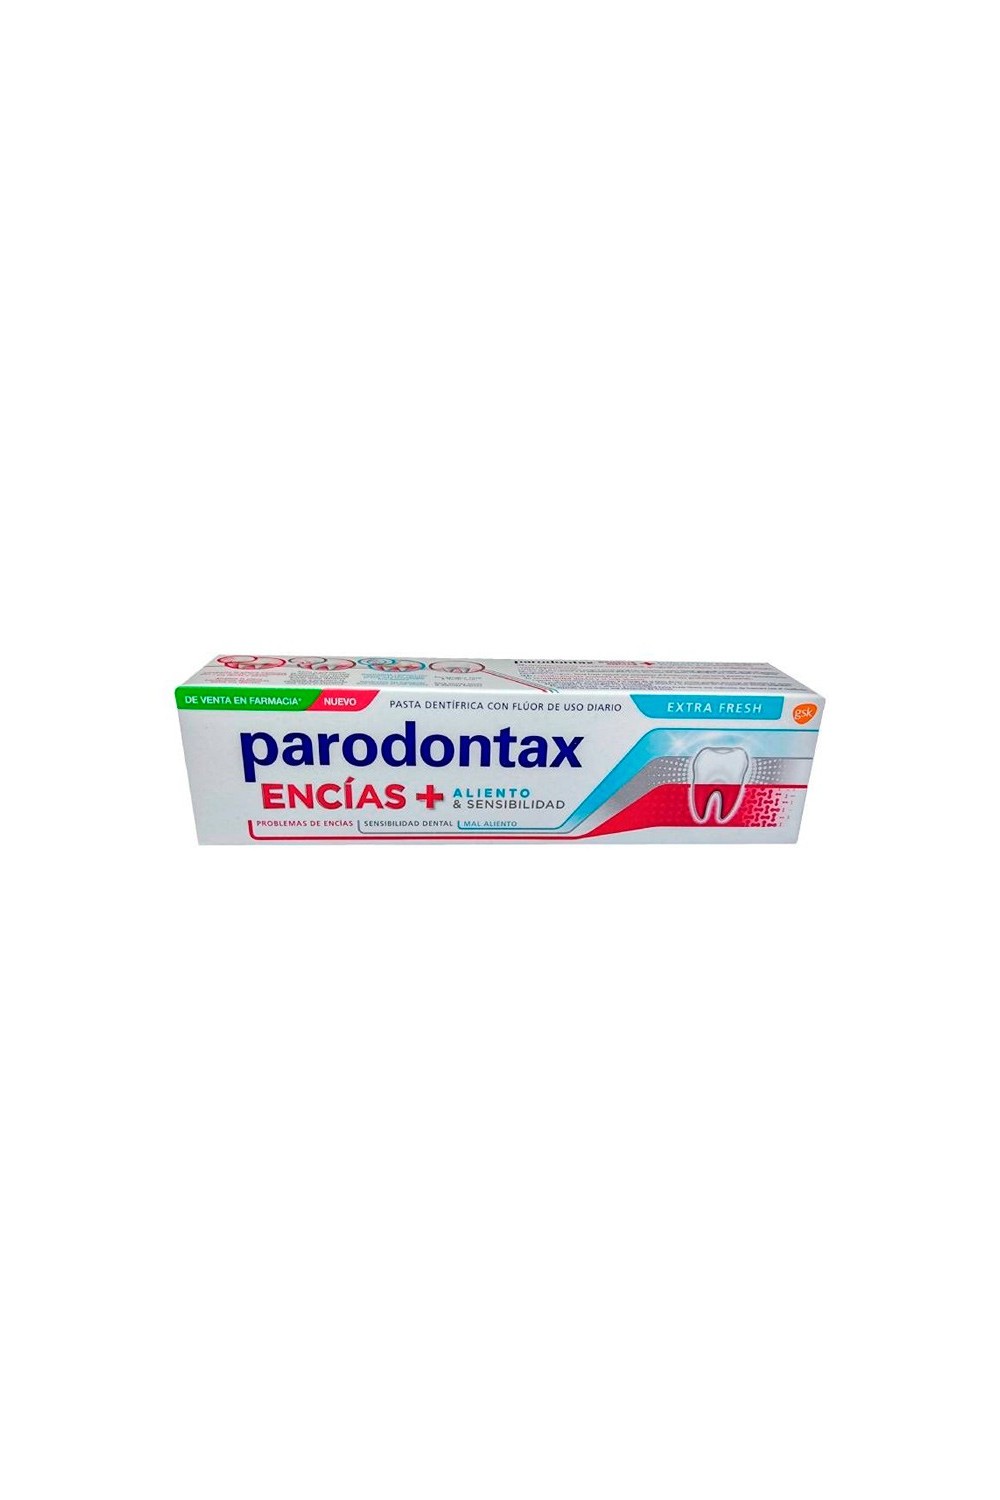 Parodontax Gum + Breath Toothpaste 75ml